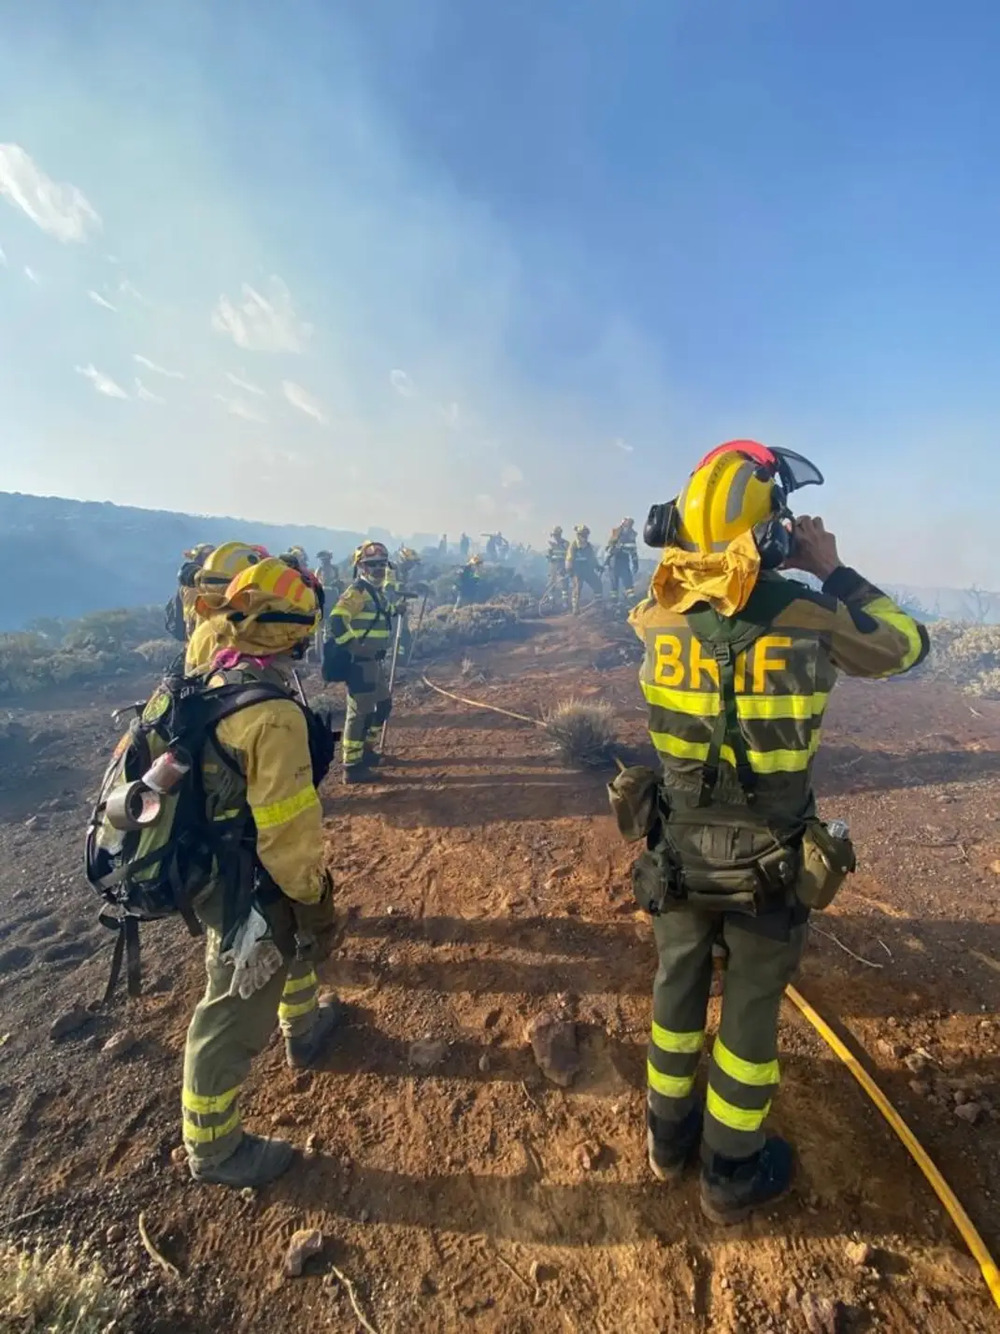 Brif de Lubia, lucha incesante contra el fuego en Tenerife